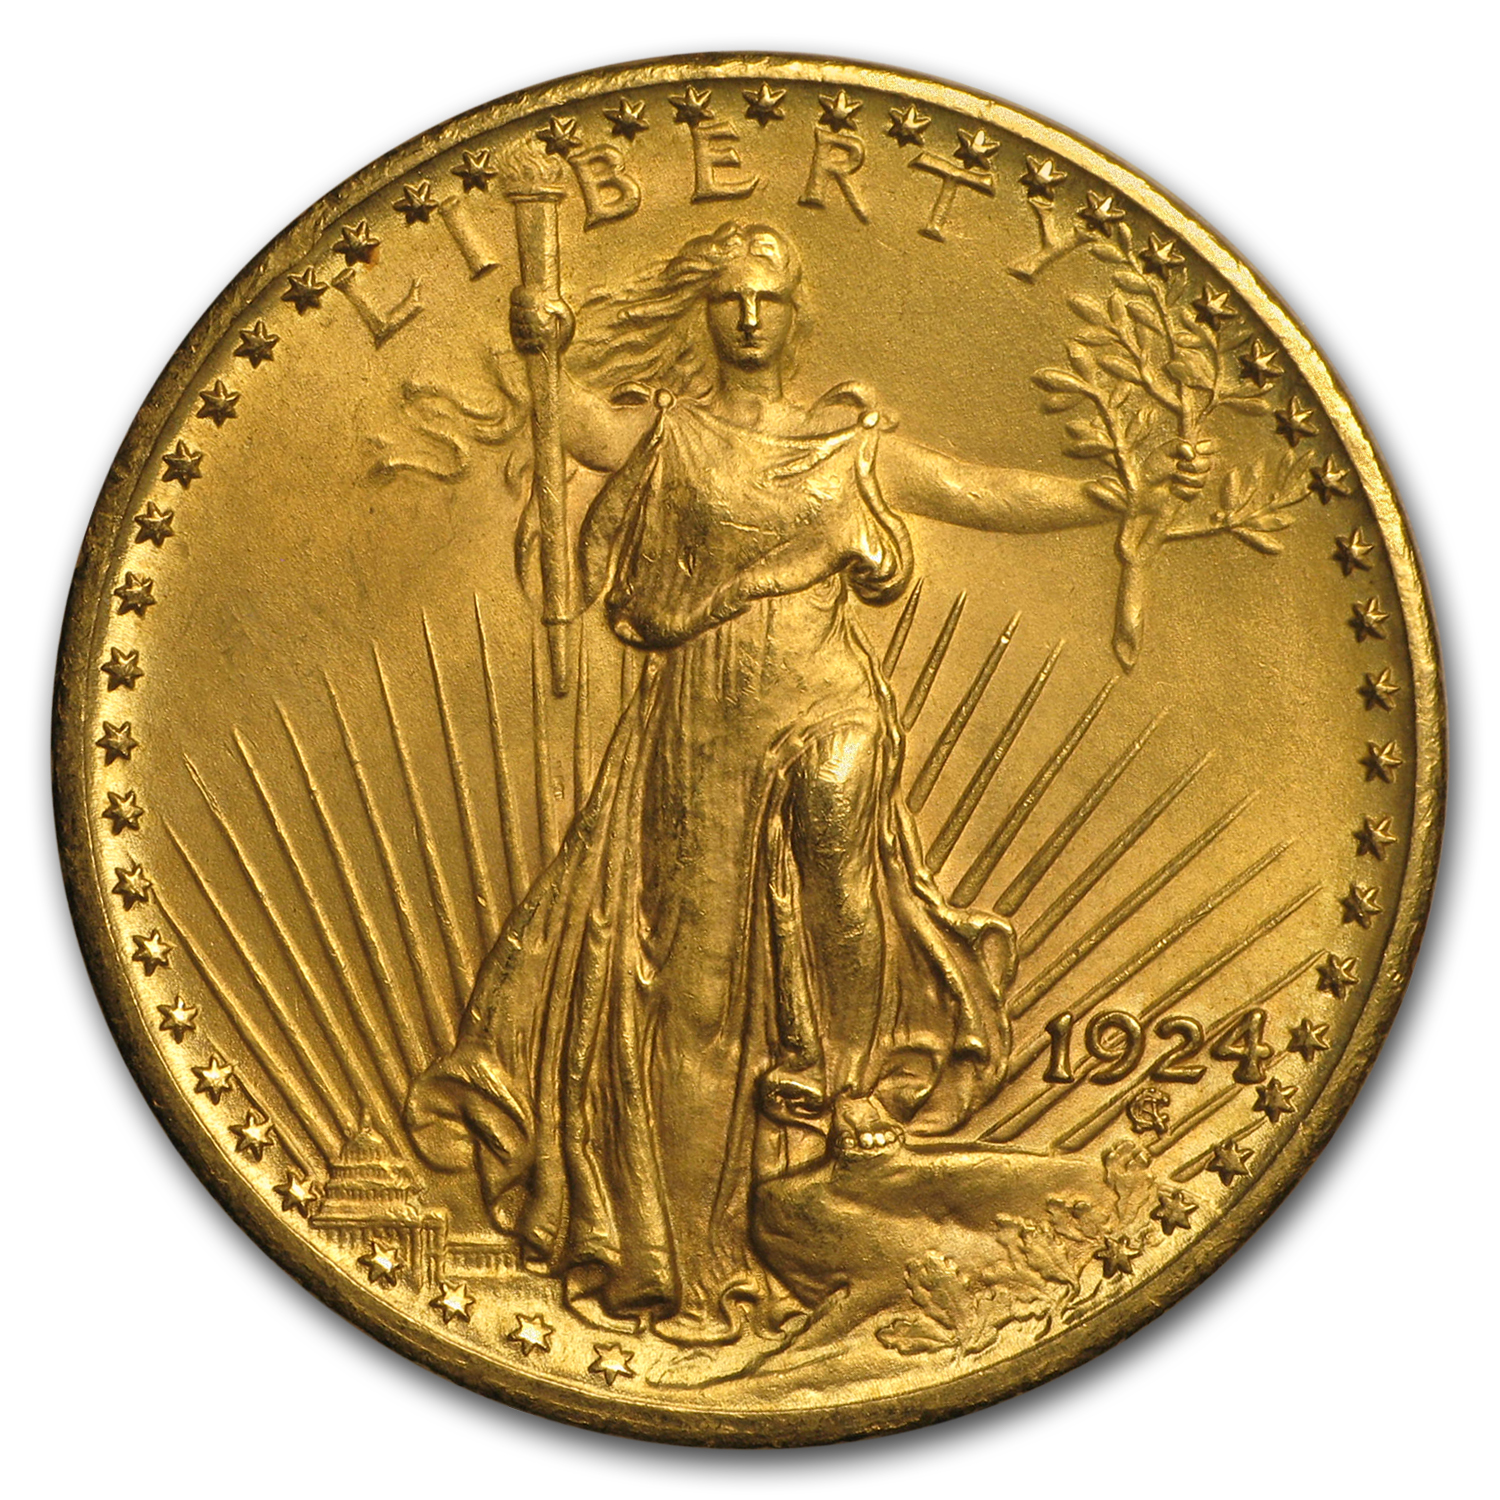 Buy 1924 $20 Saint-Gaudens Gold Double Eagle AU